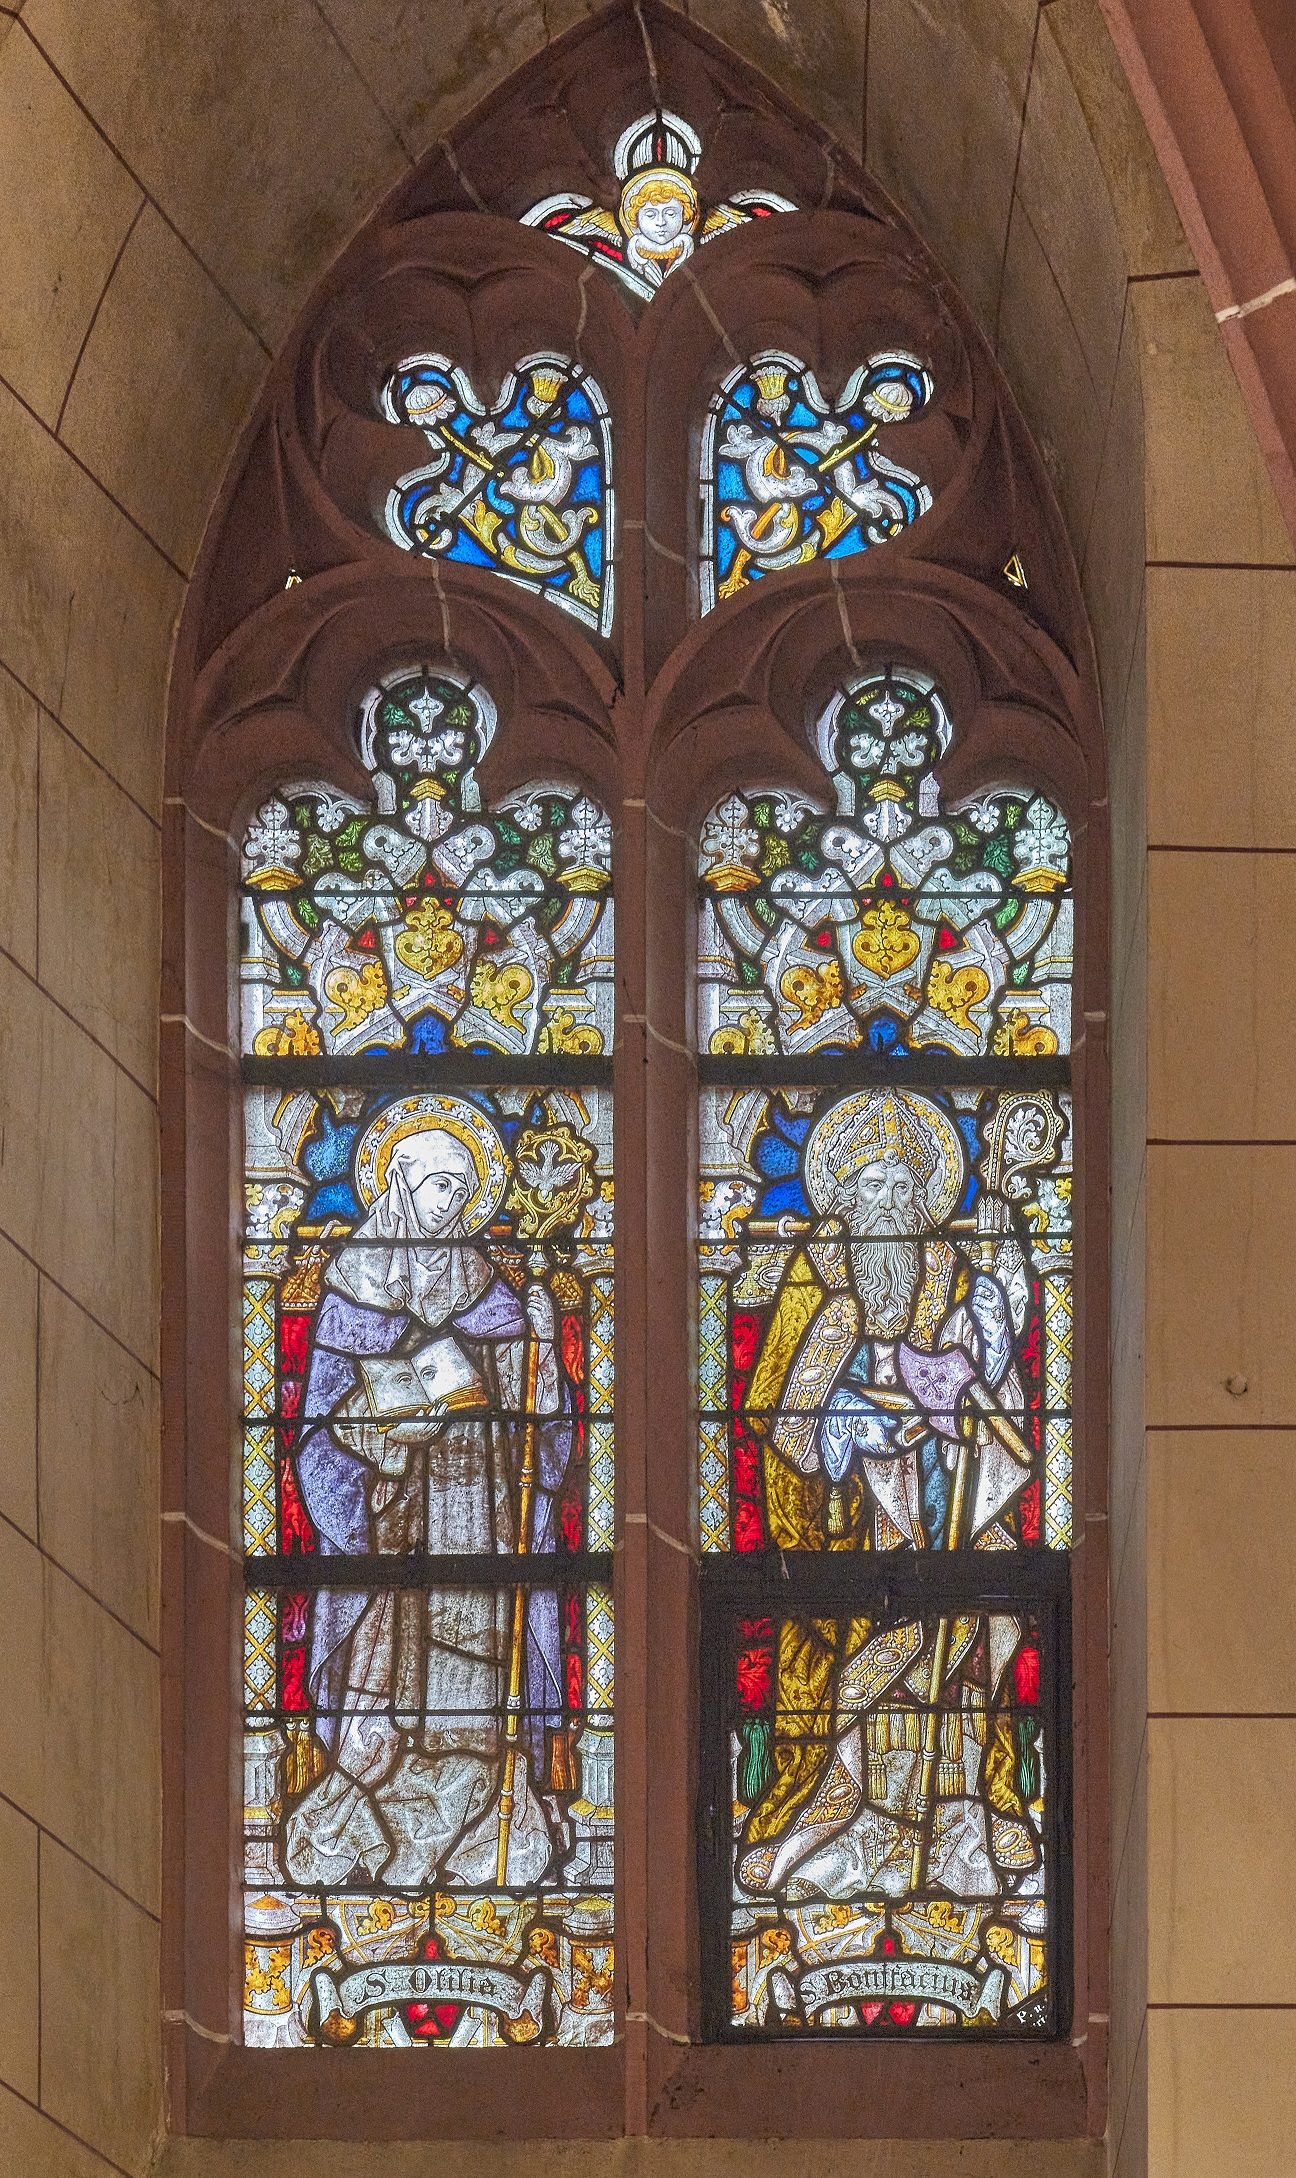 4. linkes Hochschifffenster: Ottilia von Hohenberg und Bonifatius (c) W. Vollrath